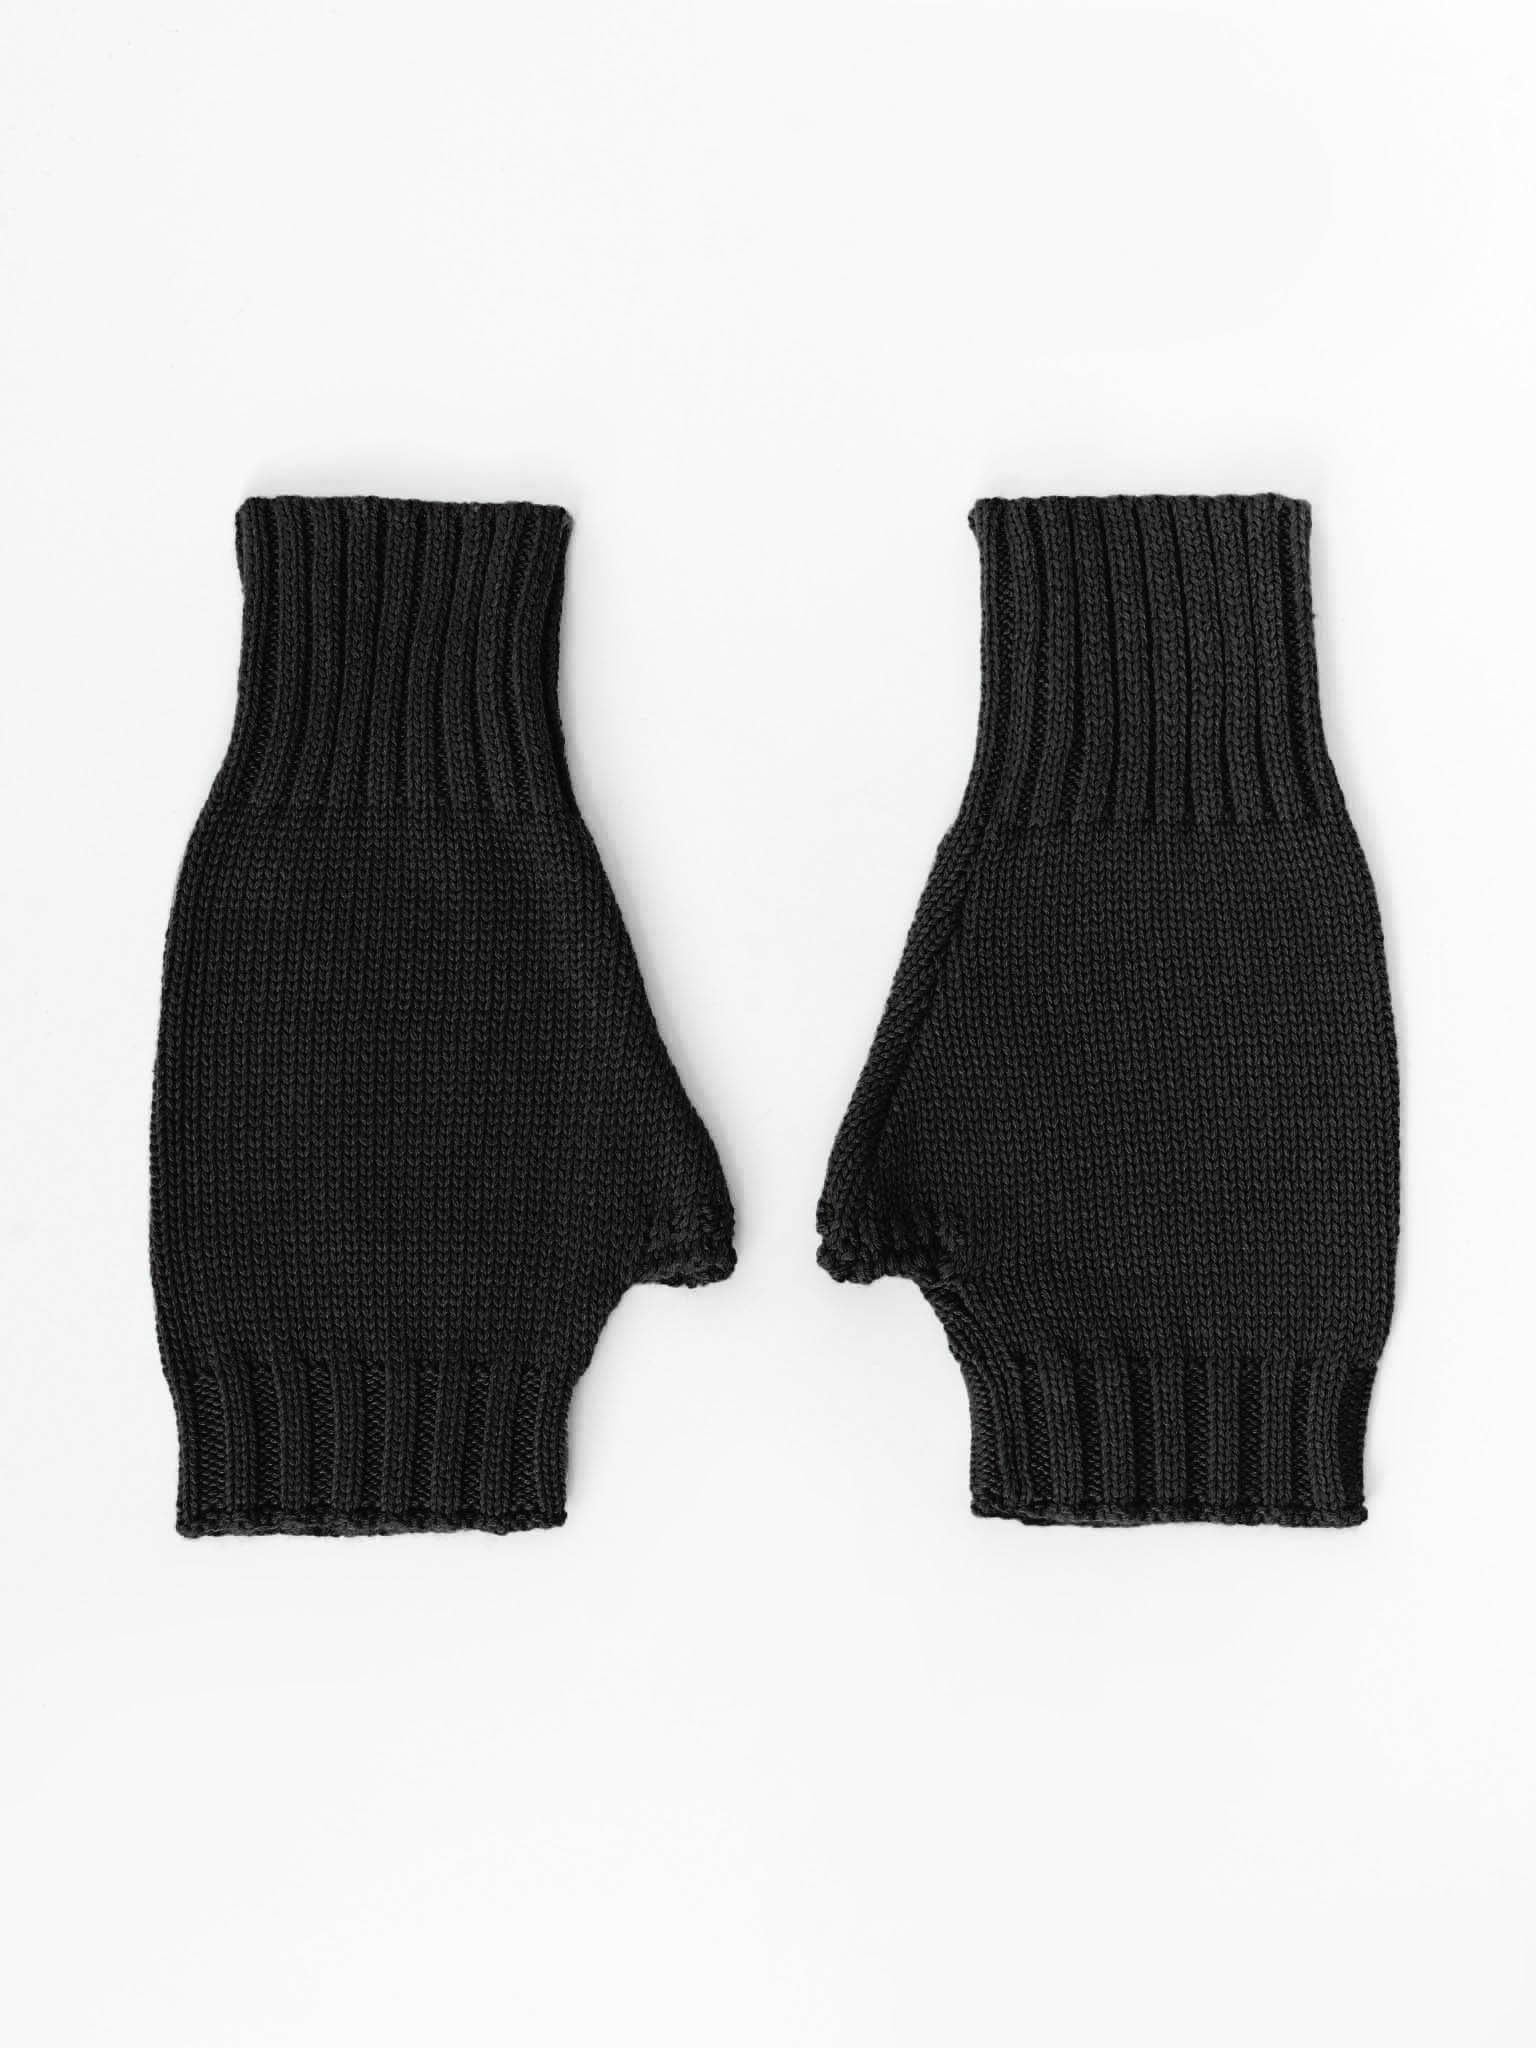 Fine-knit fingerless gloves